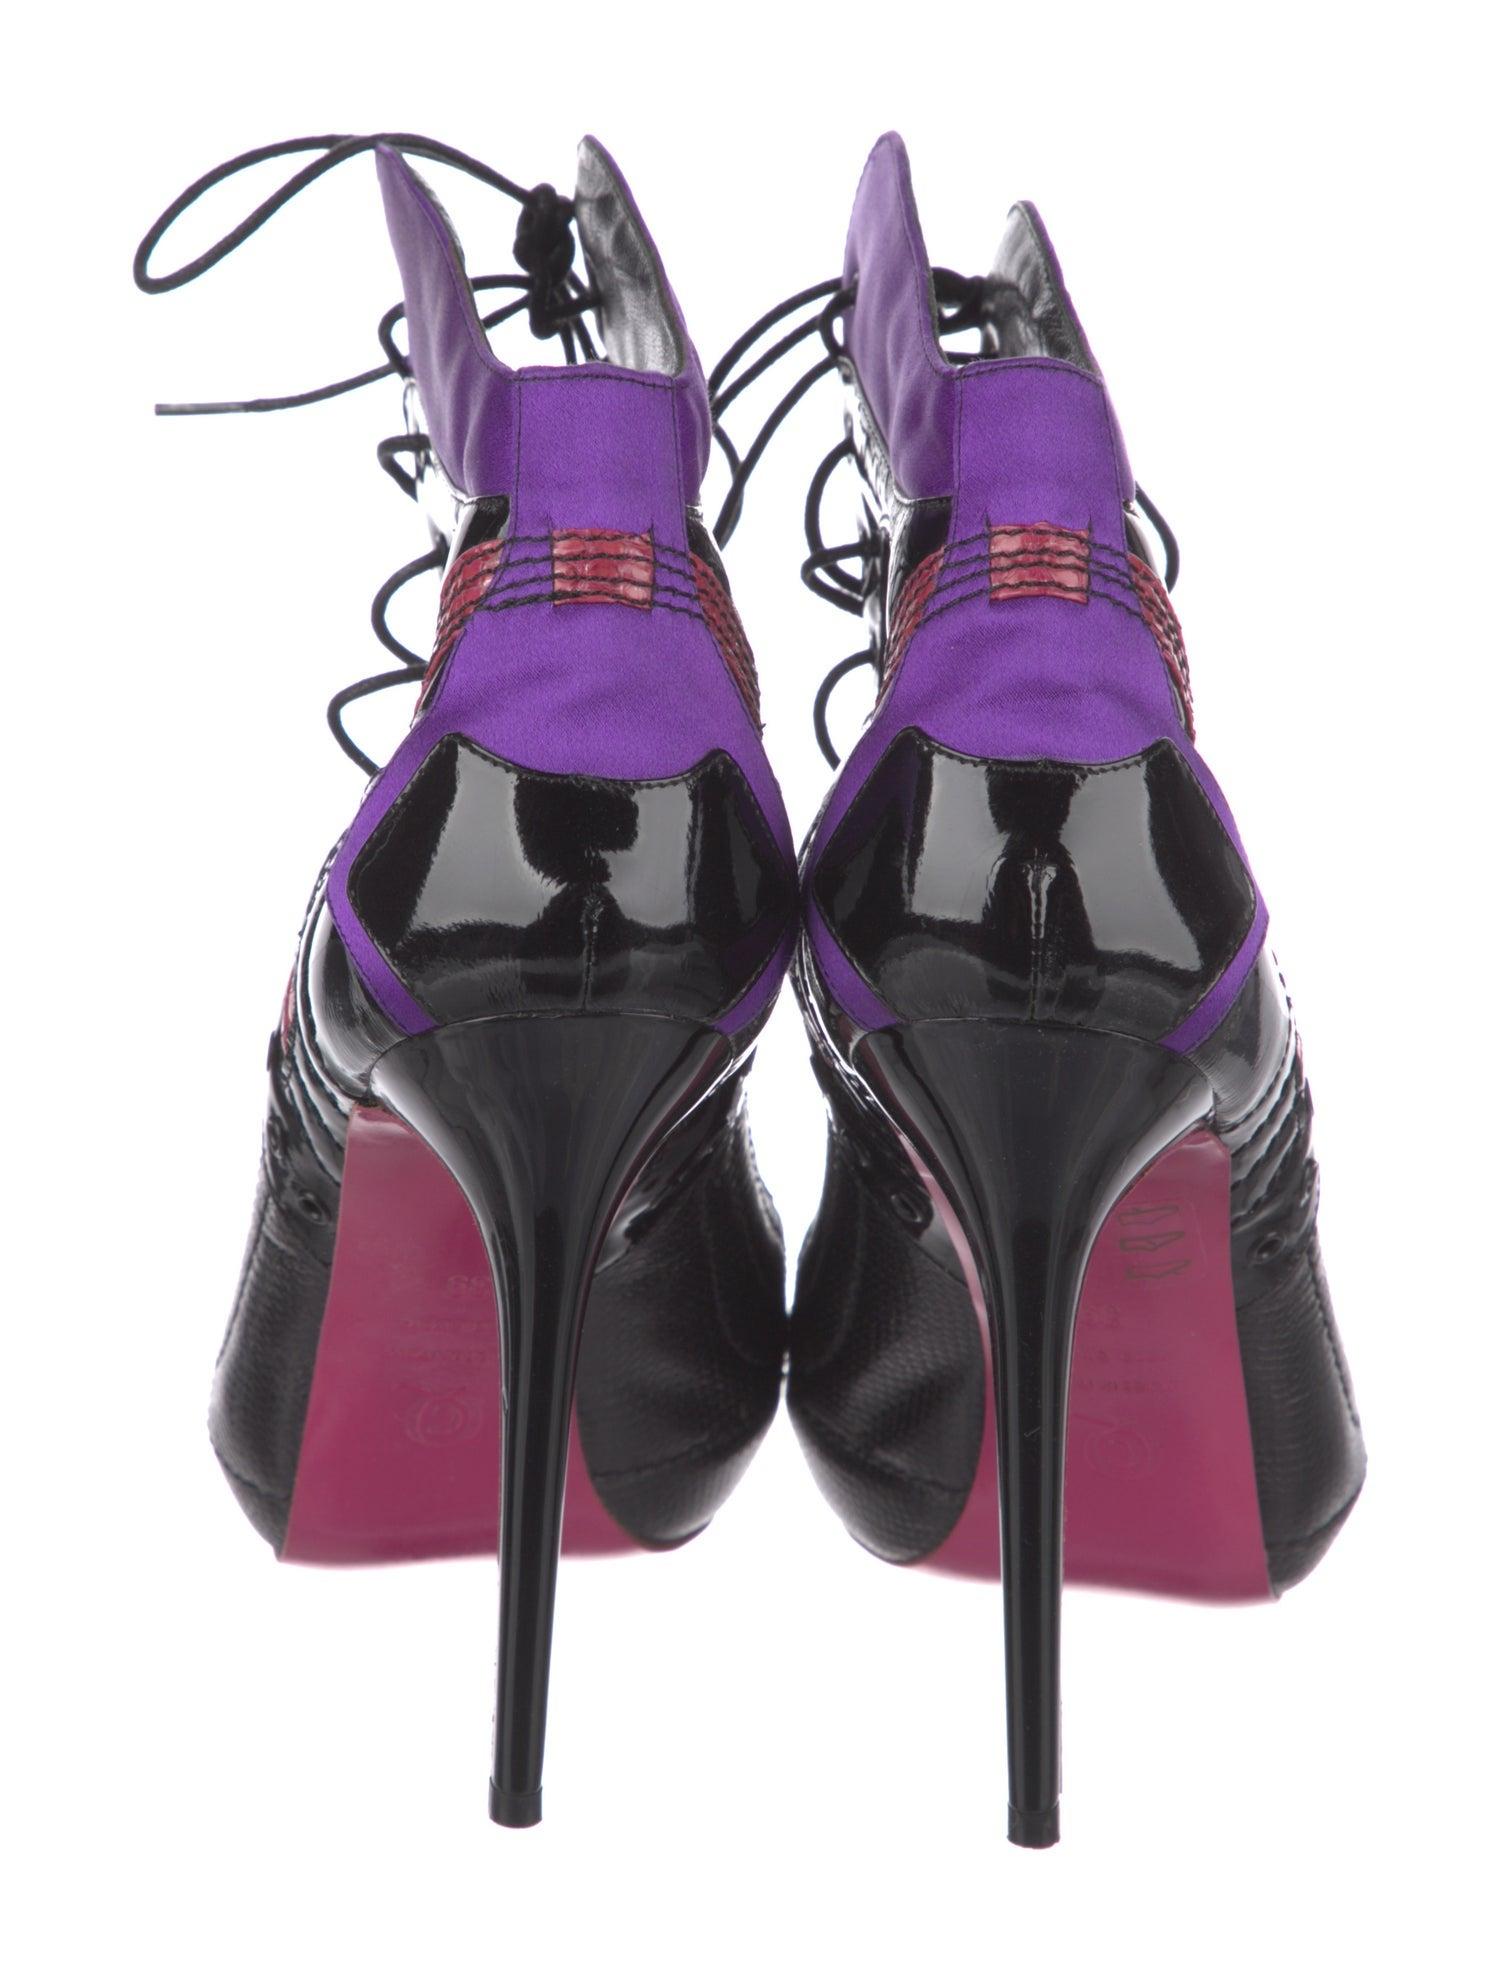 Chaussures à lacets du défilé 2008 d'Alexander McQueen
Nouveau avec des défauts mineurs 
Taille 39
VENTE FINALE  